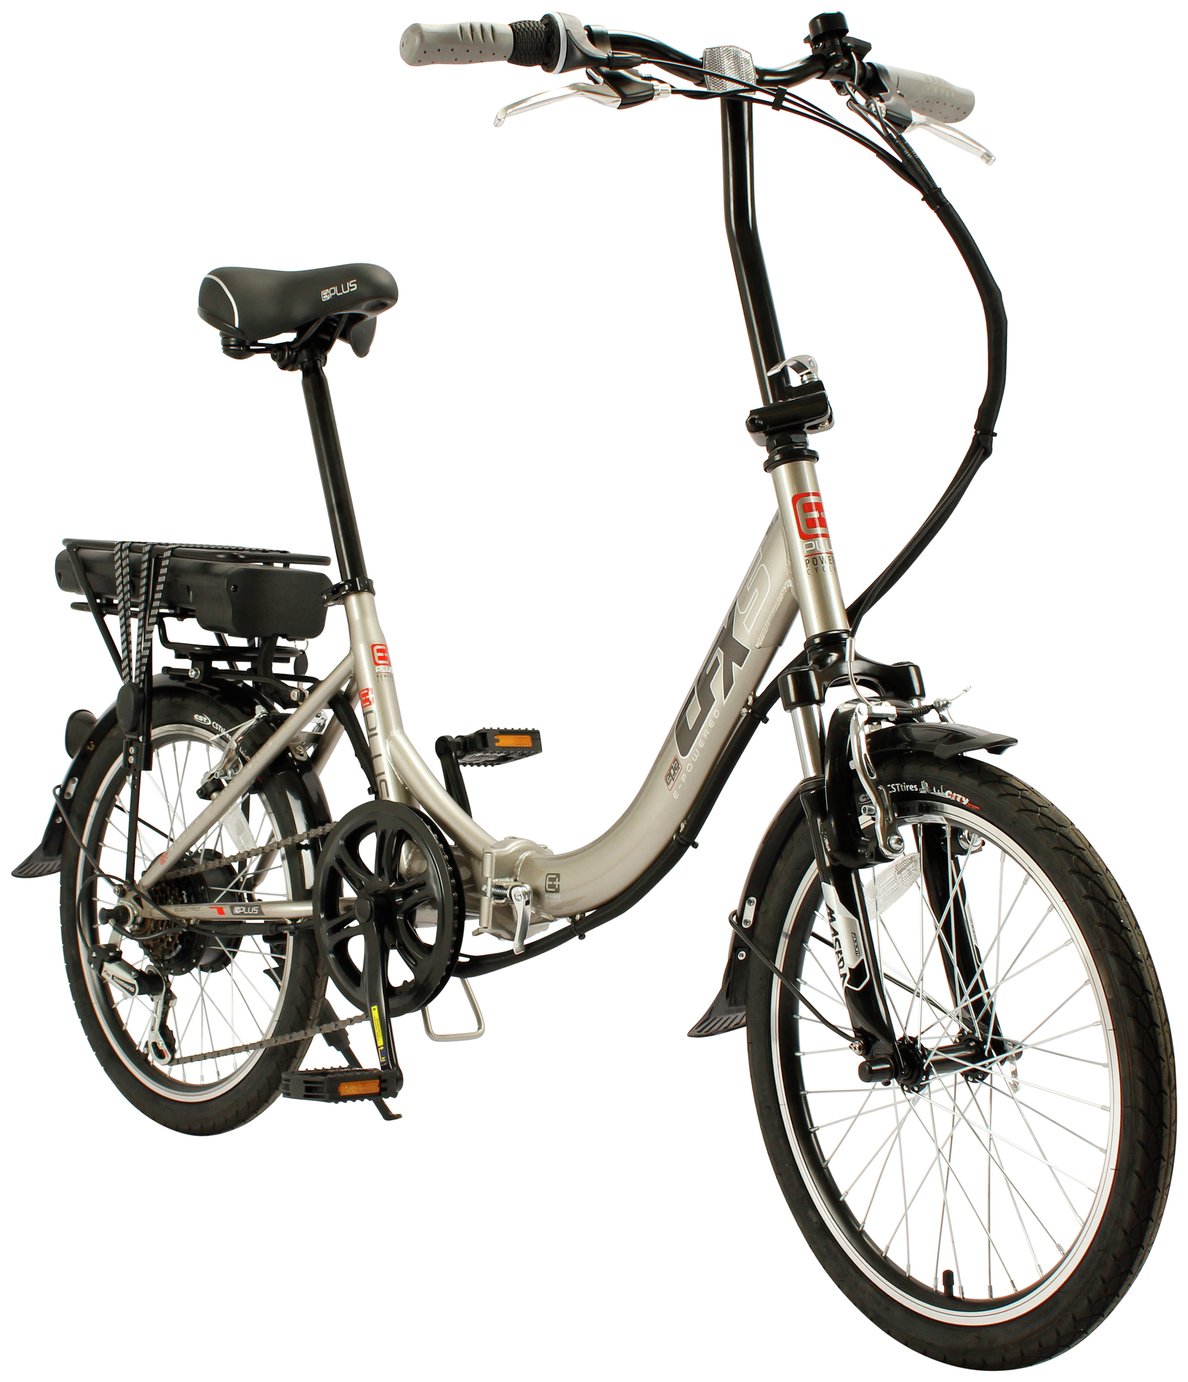 Eplus CFX5 20? Wheel Size Unisex 24V Folding Electric Bike